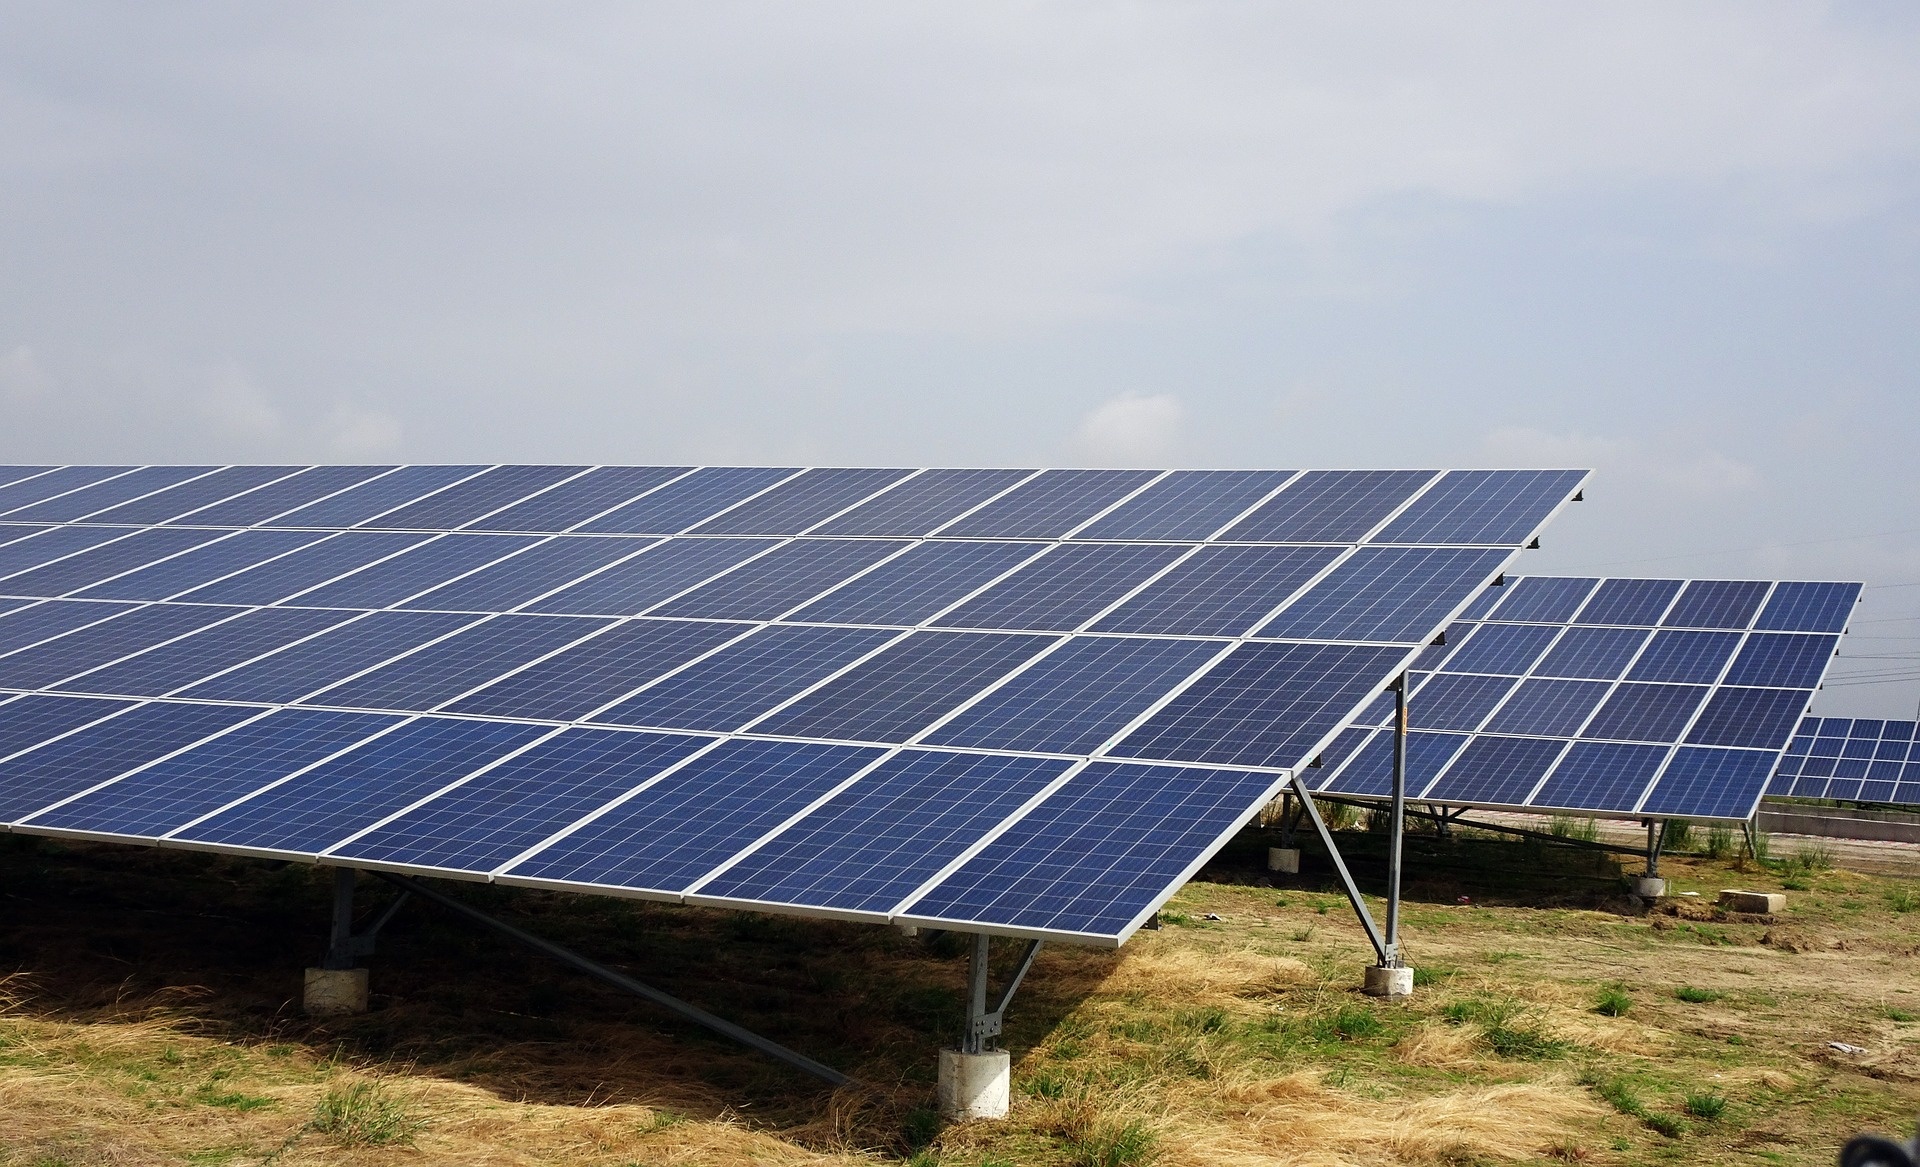 Community Solar, Solar PV, Solar Panels, Solar Energy, YSG Solar